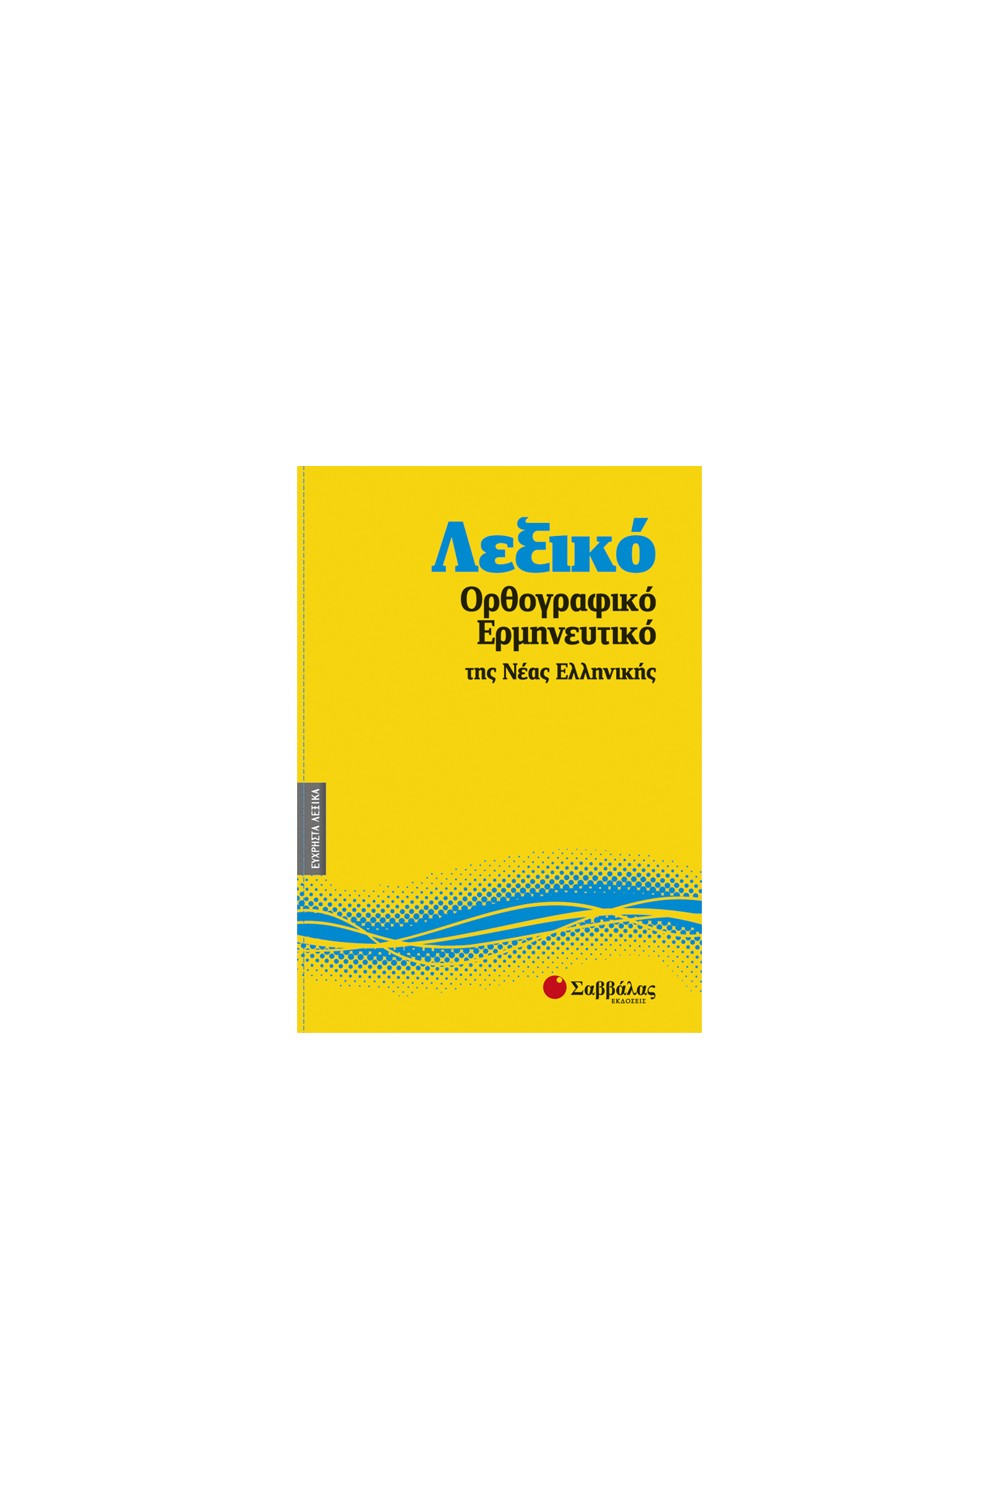 Λεξικό Ορθογραφικό Ερμηνευτικό Νέας Ελληνικής Νο5